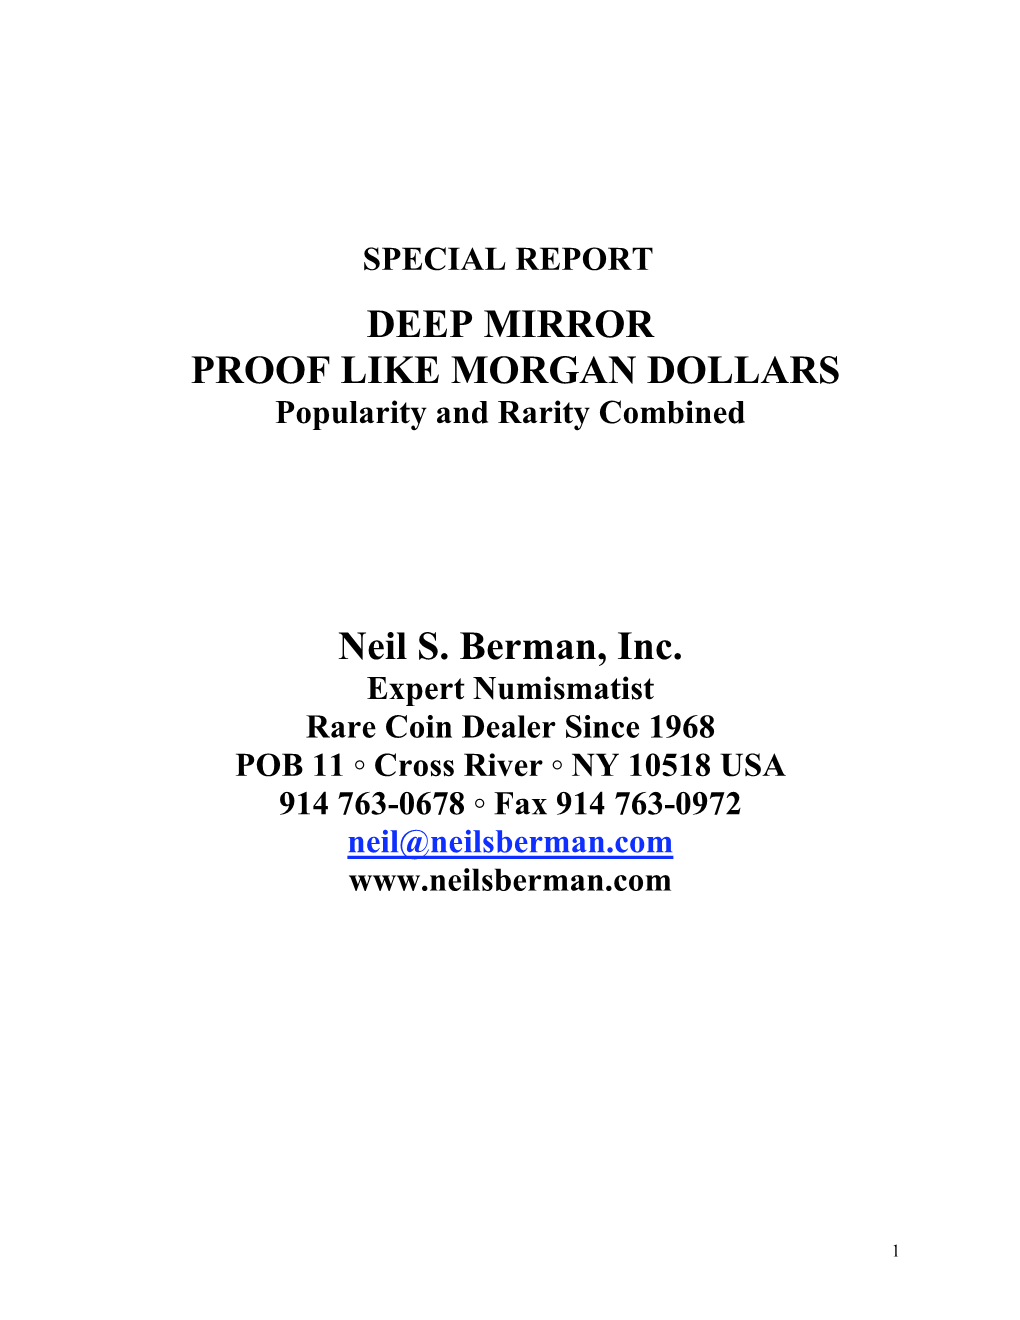 Deep Mirror Proof-Like Morgan Dollars